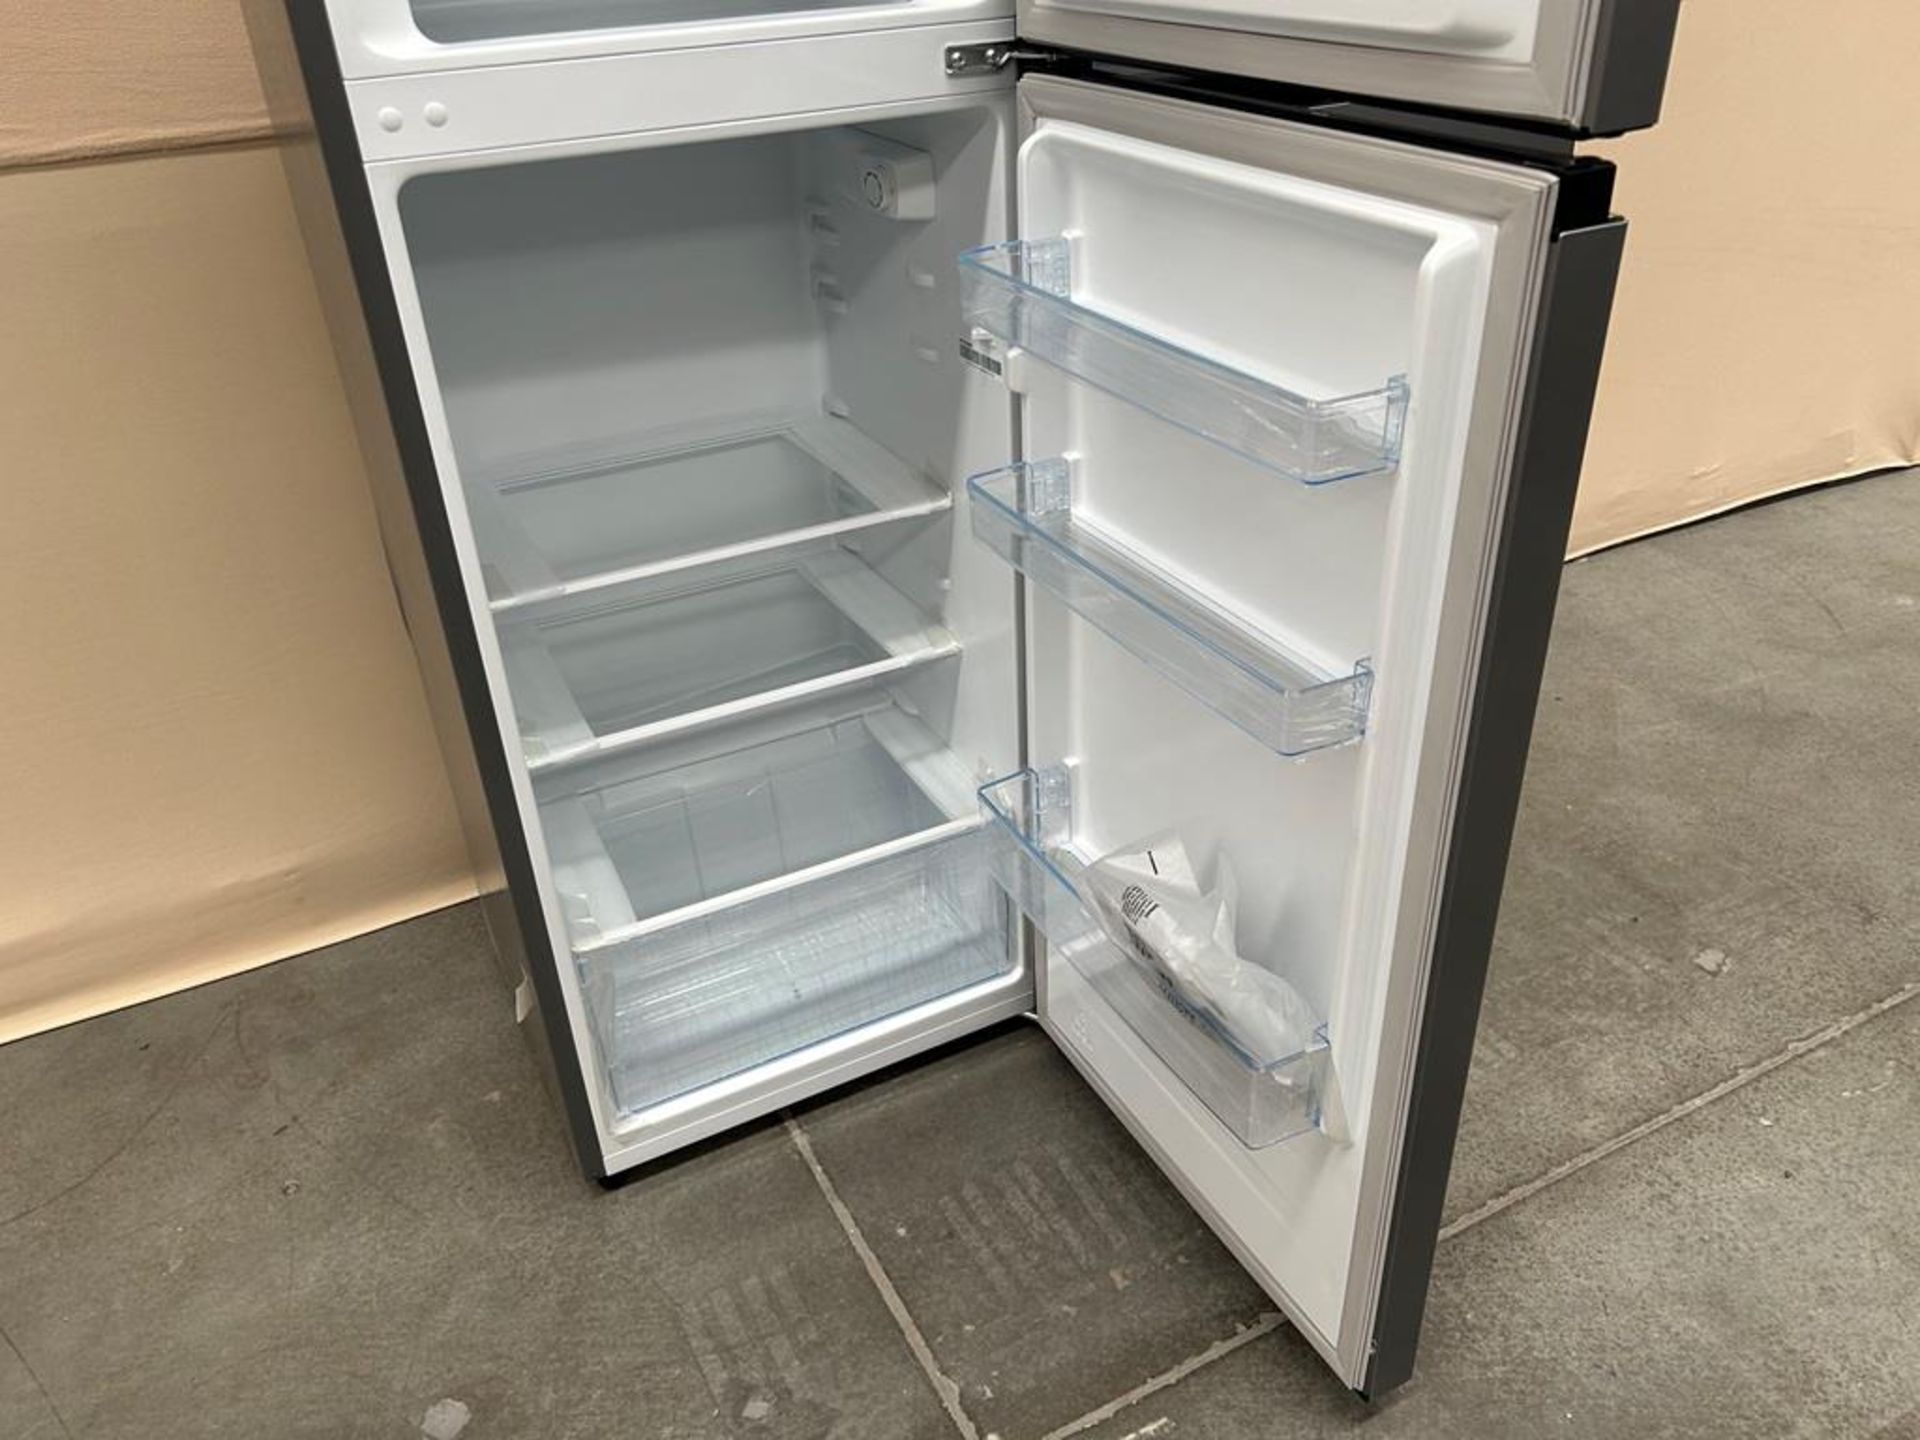 Lote de 2 refrigeradores contiene: Refrigerador Marca HISENSE, Modelo RT80D6AGX, Serie 20422, Color - Image 6 of 7